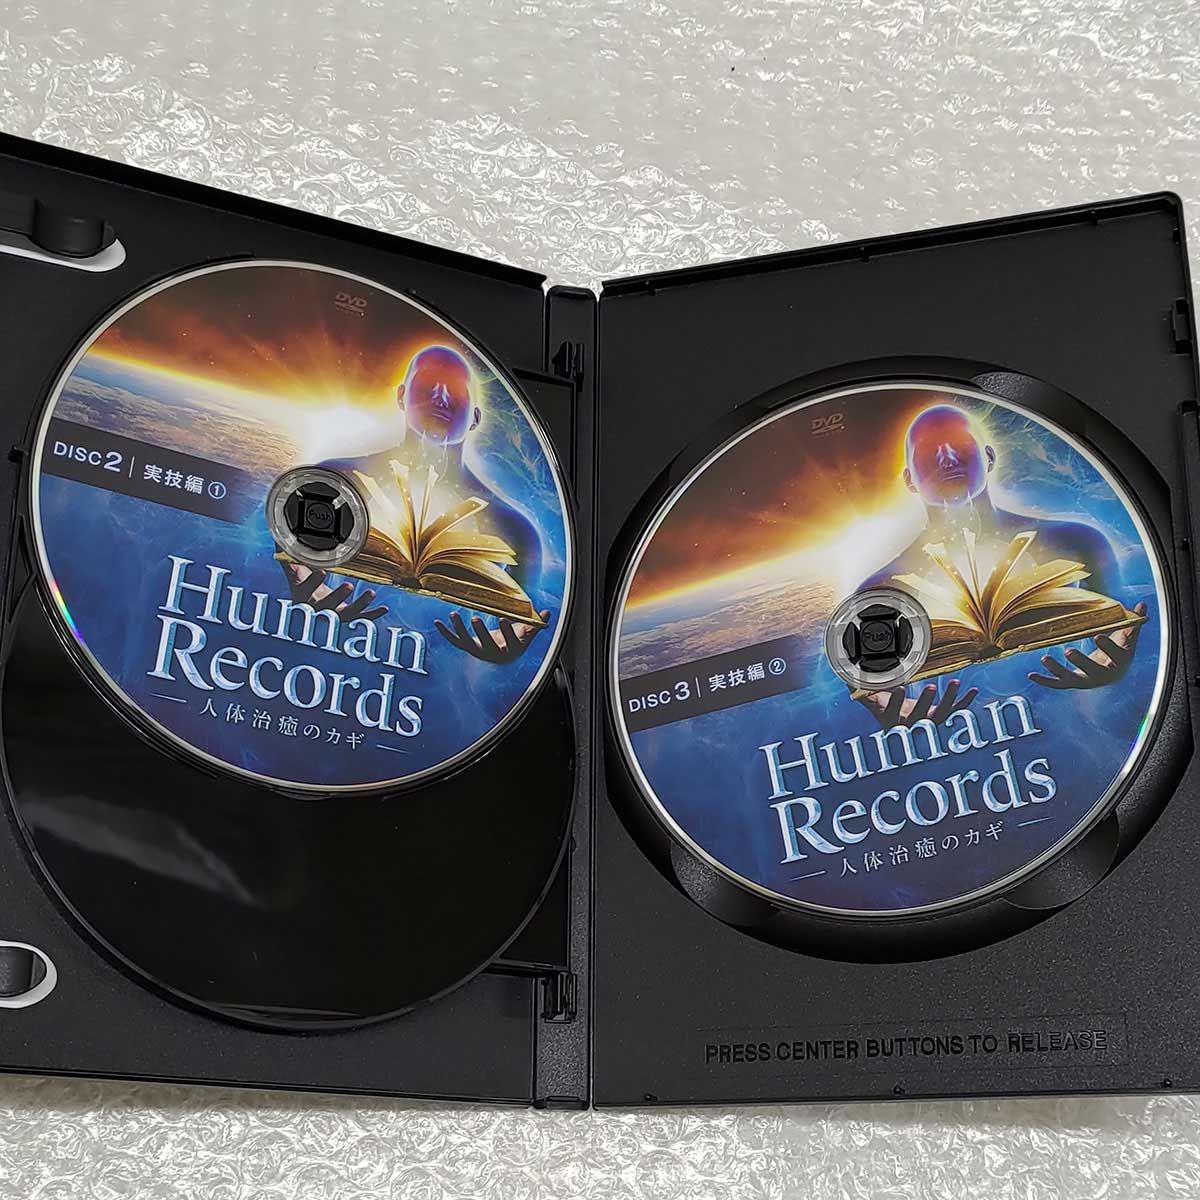 山村 勇太 Human Records 人体治療のカギ DVD 4枚組 - カウカウキング